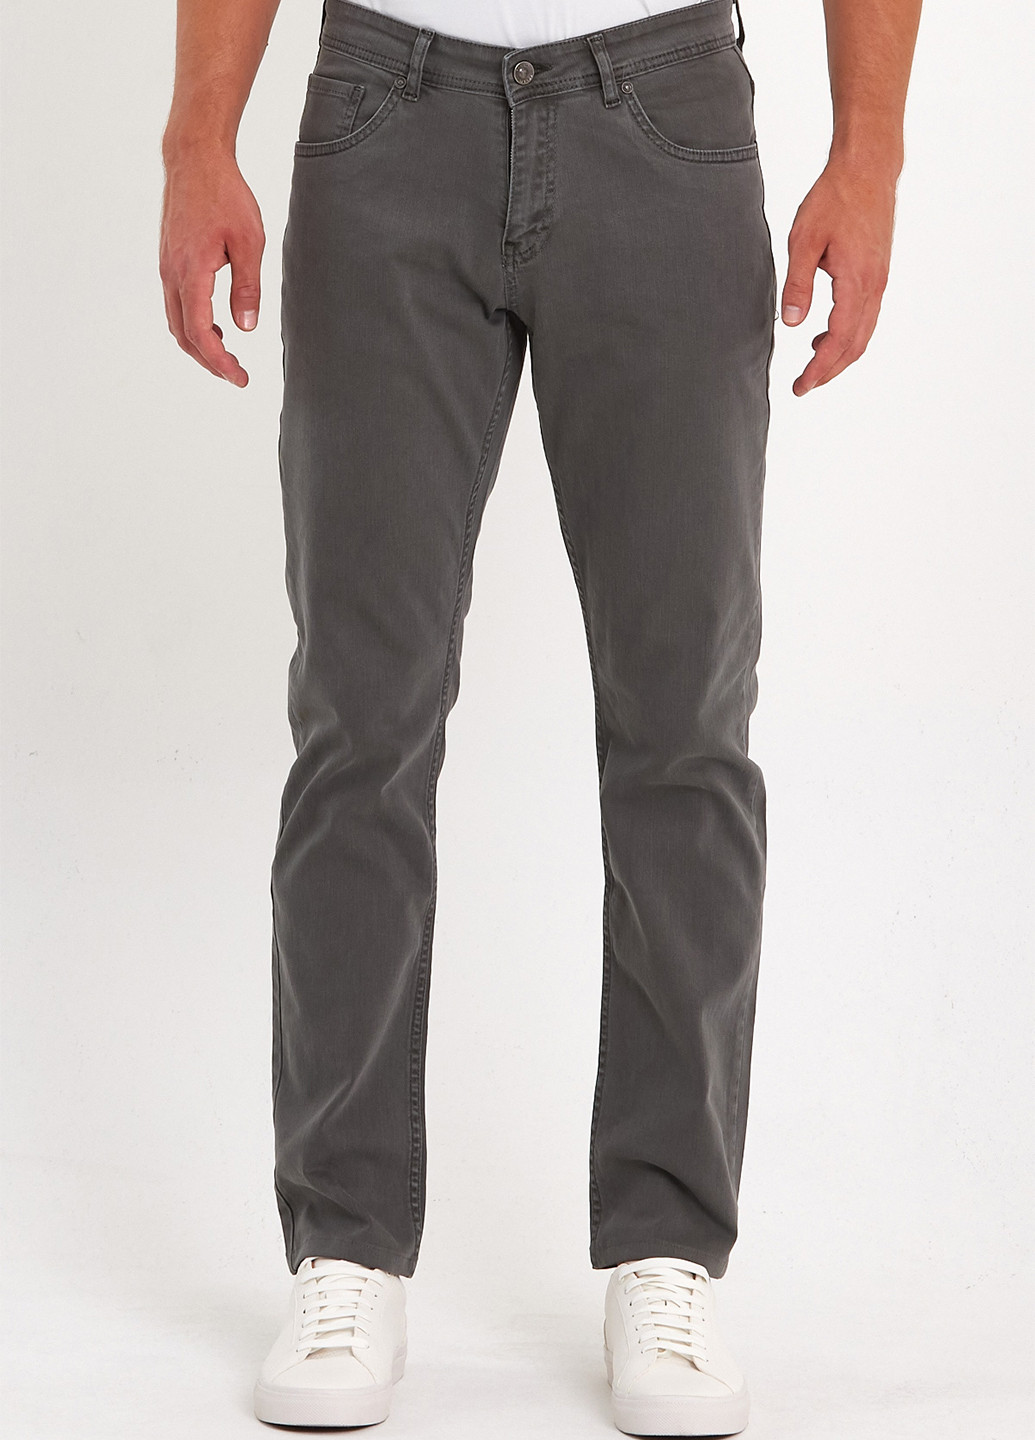 Серо-коричневые демисезонные регюлар фит джинсы Trend Collection